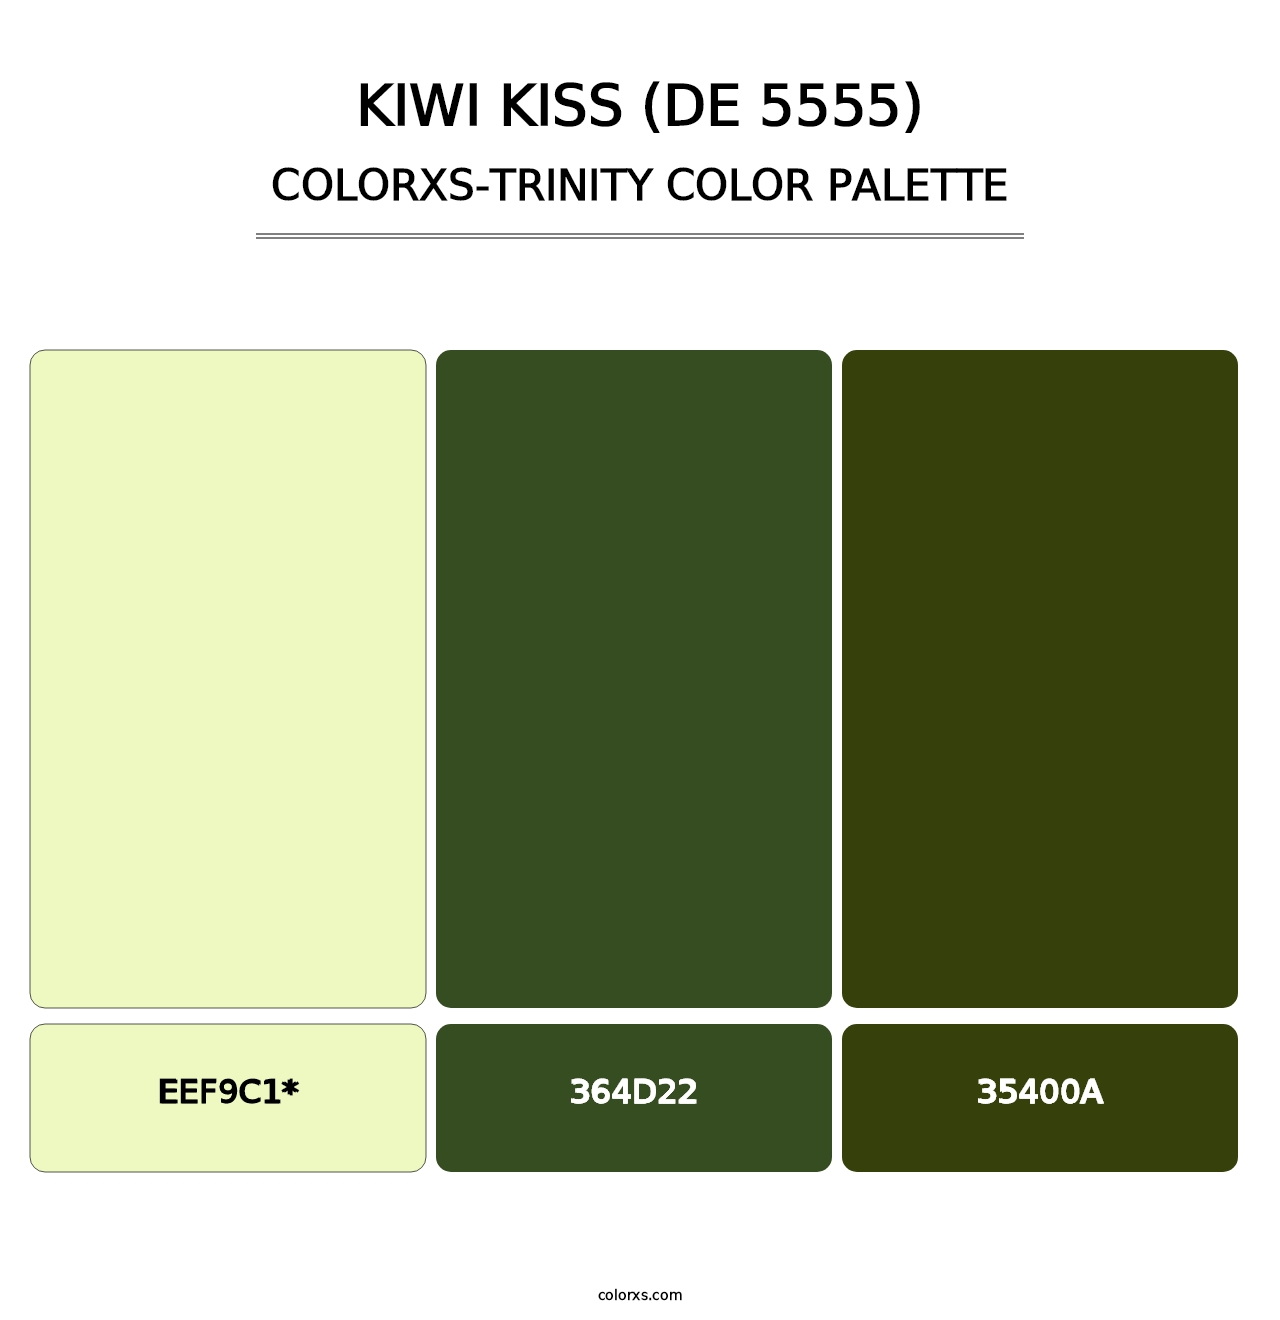 Kiwi Kiss (DE 5555) - Colorxs Trinity Palette